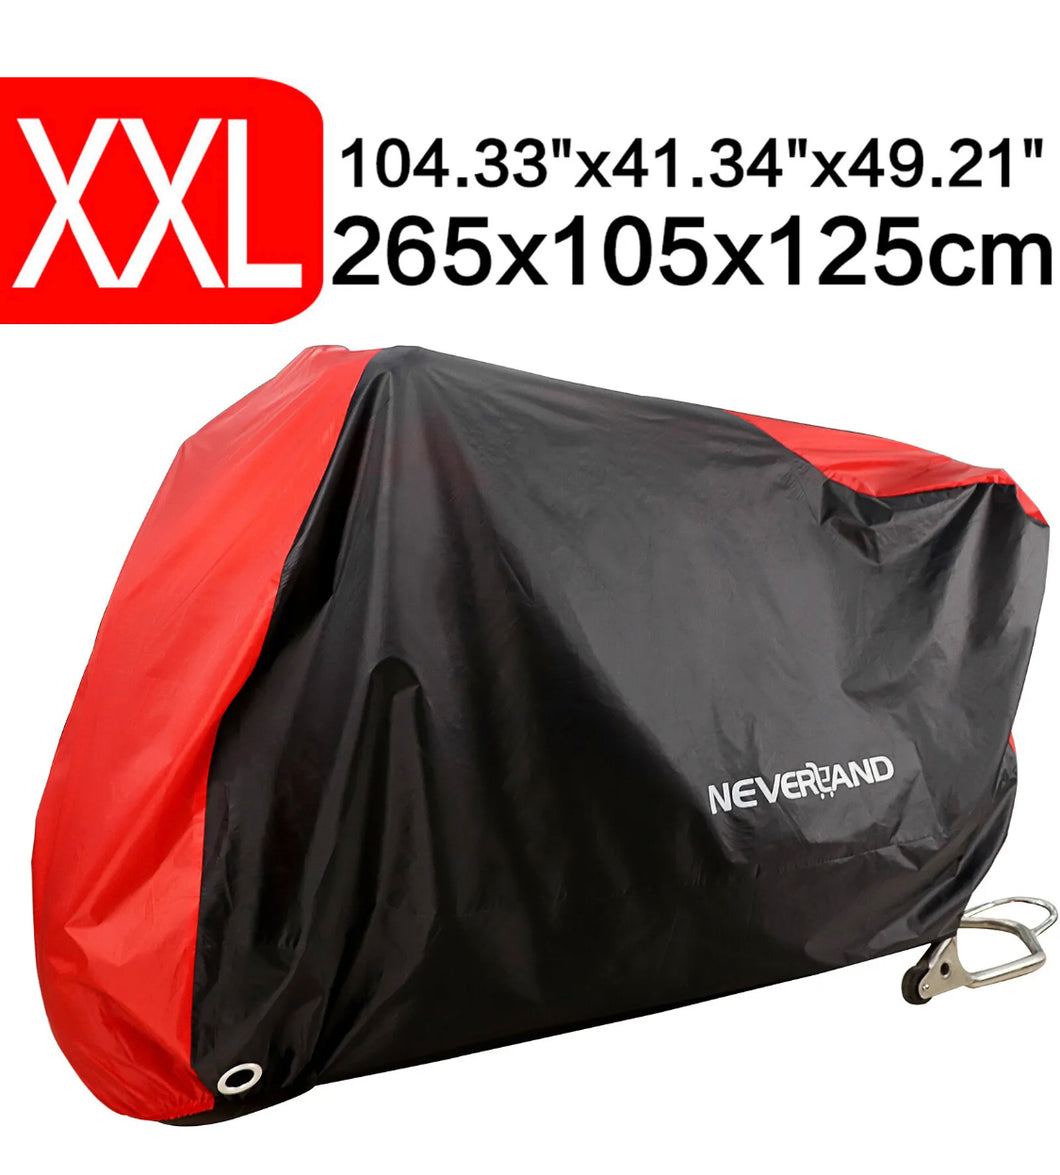 XXL Motorcycle Motorbike Cover Waterproof